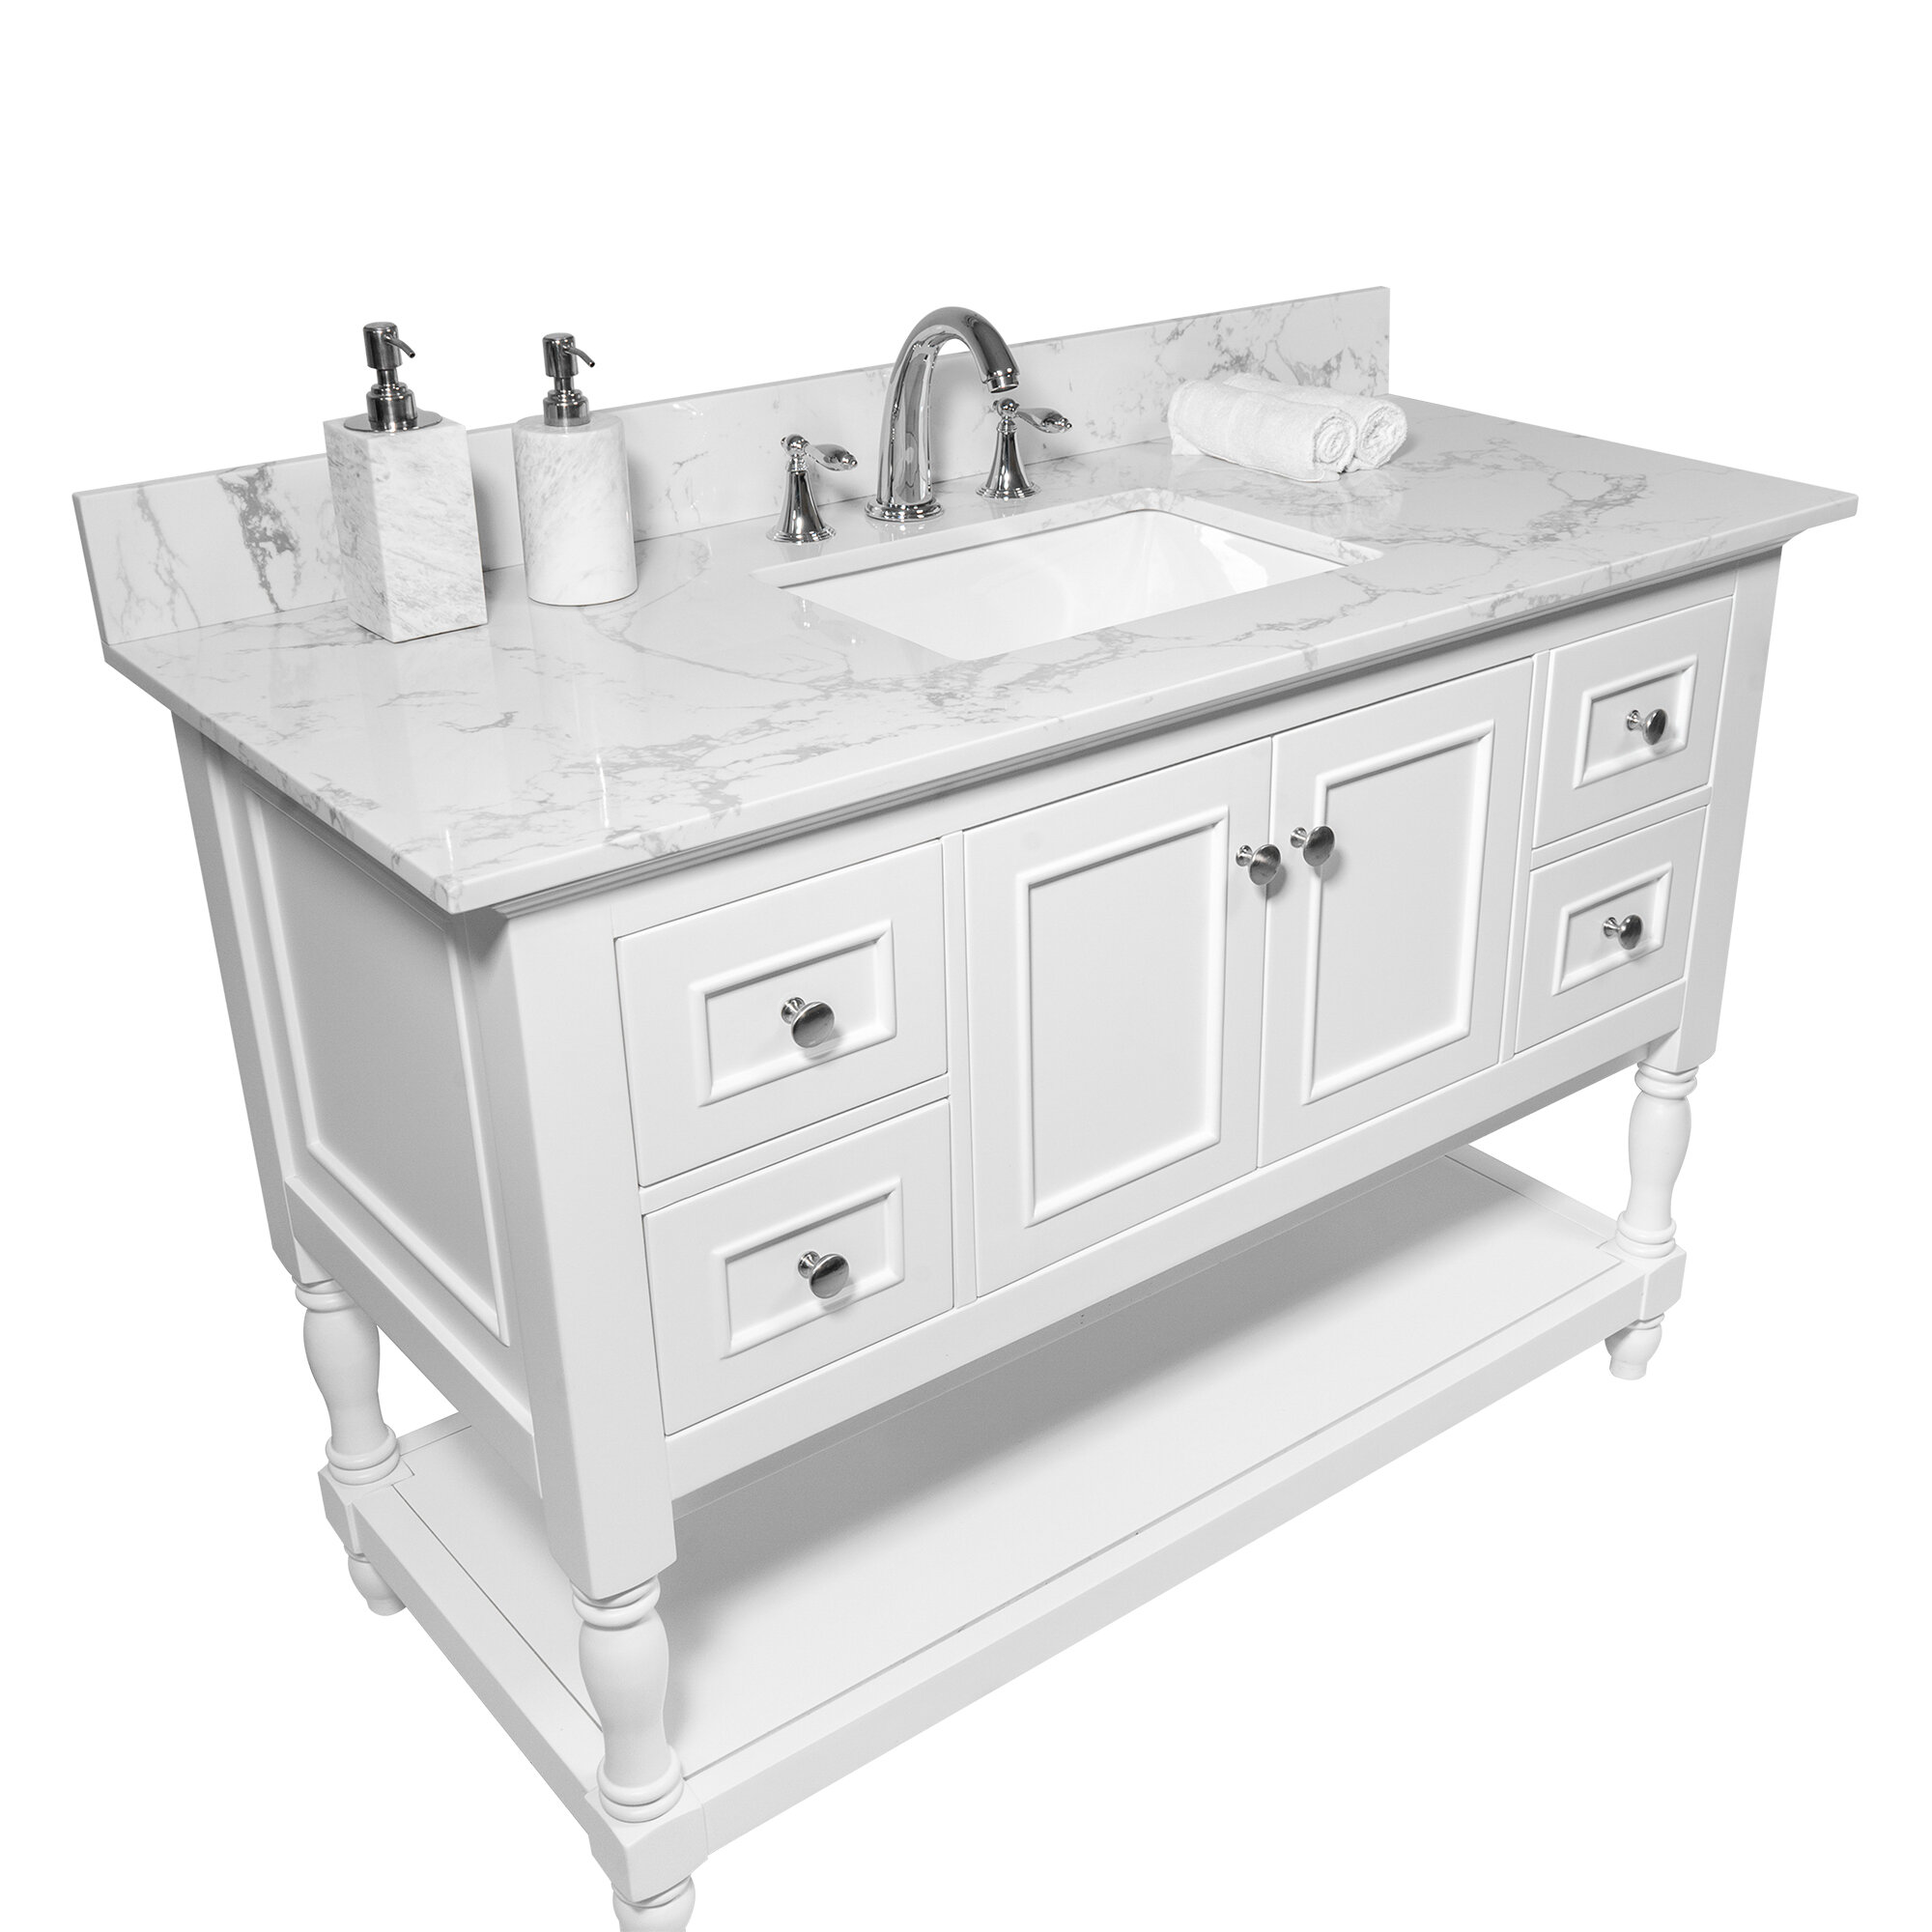 Watqen 37 Single Bathroom Vanity Top In White With Sink Reviews